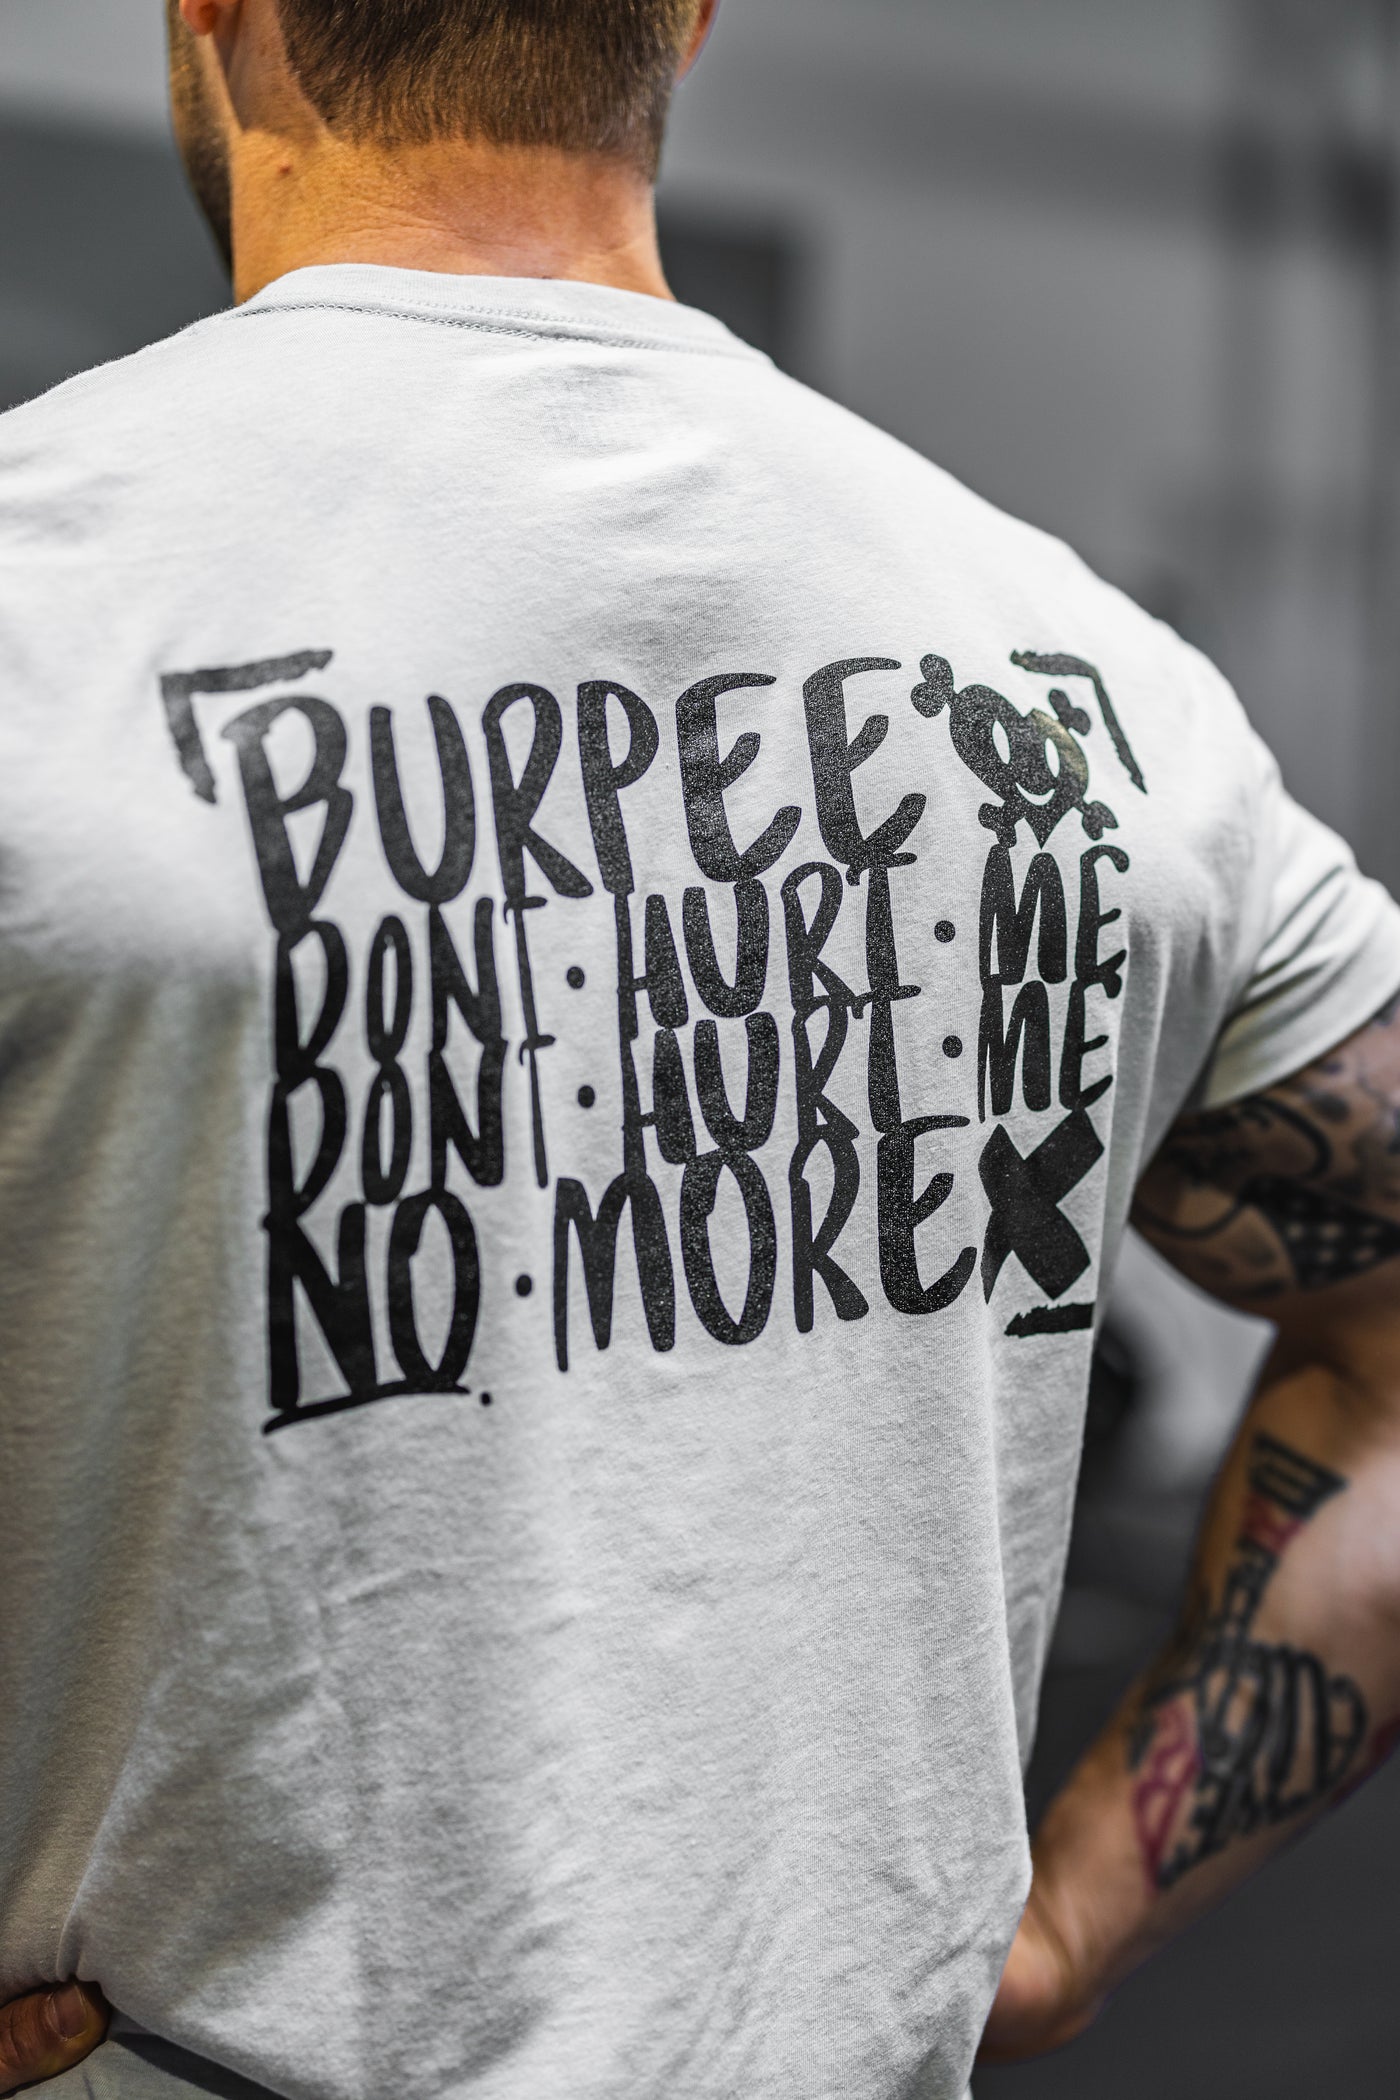 BURPEE DON‘T HURT ME - T-Shirt